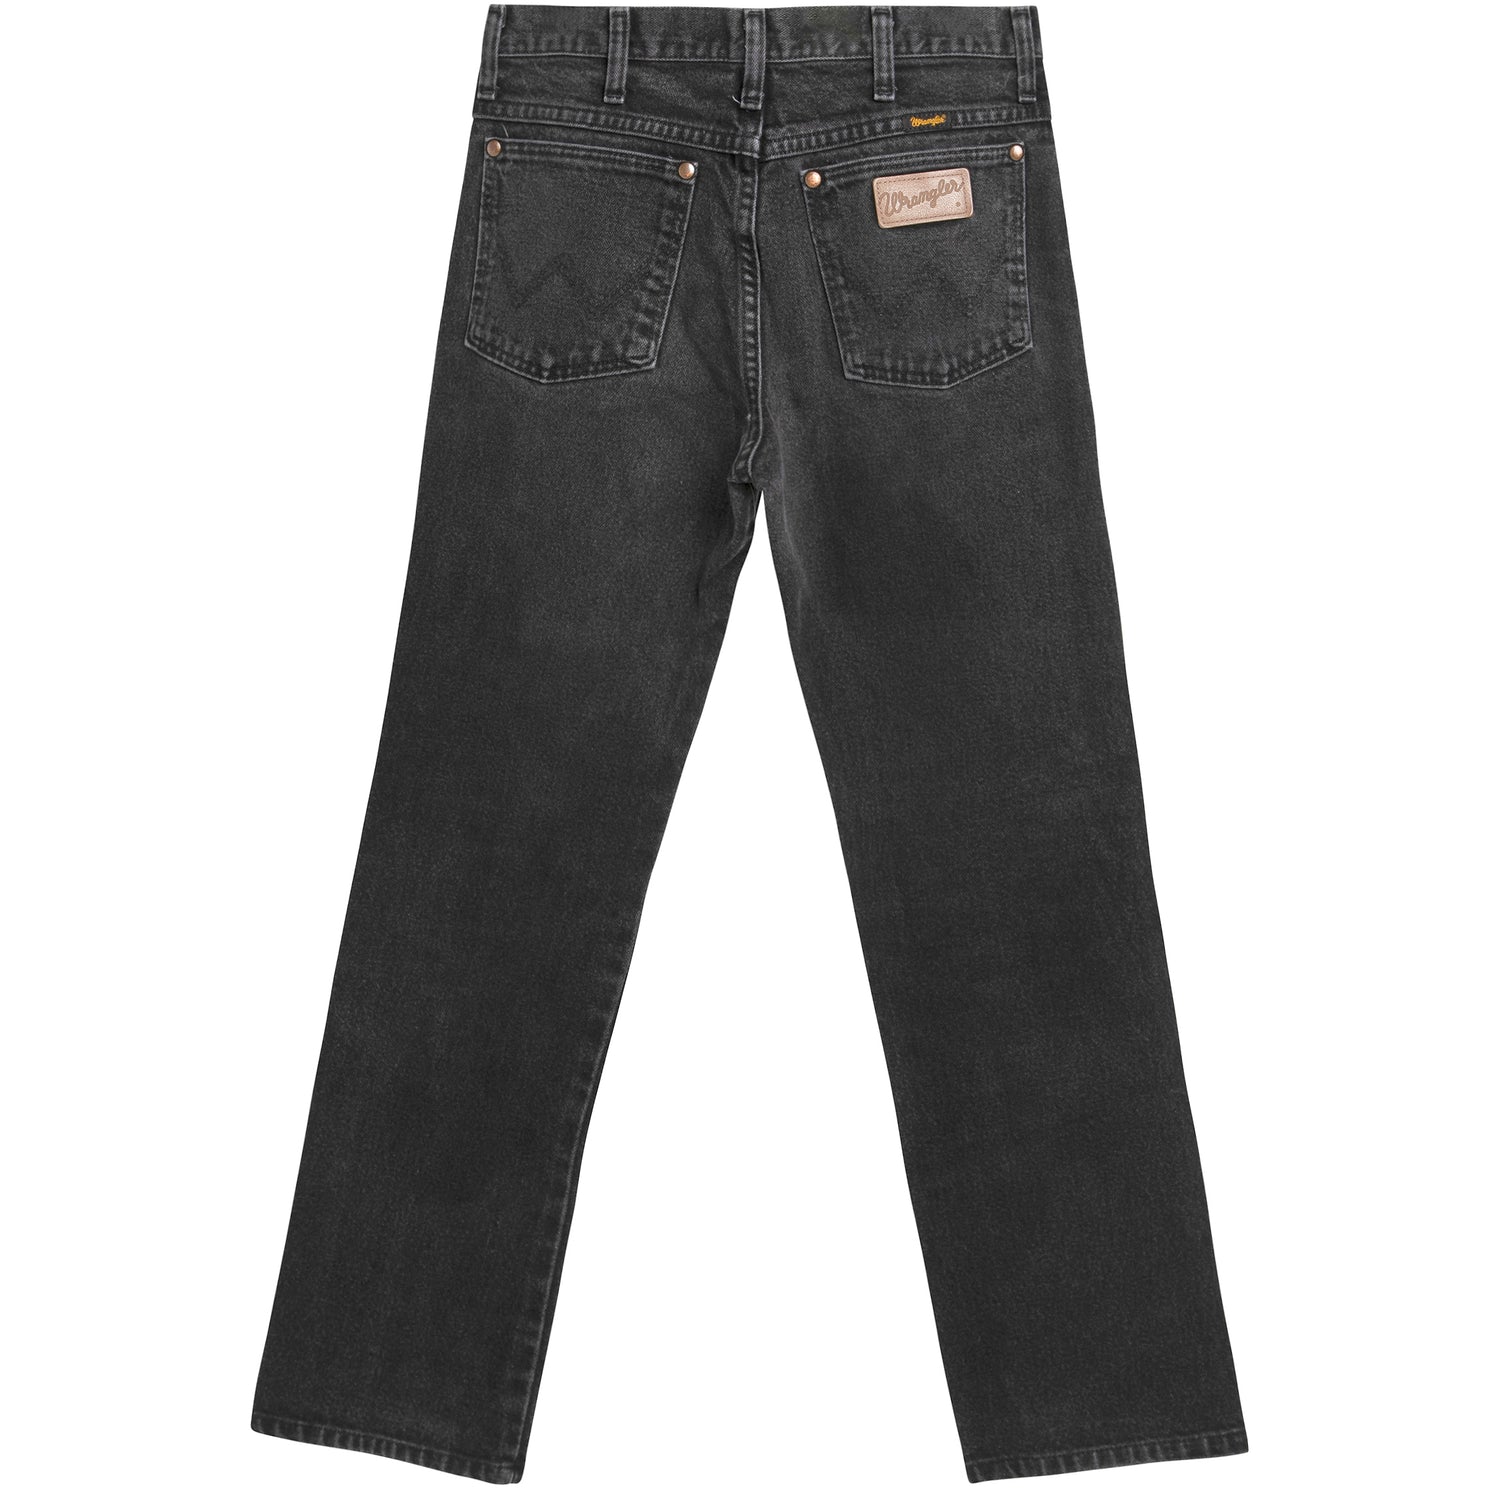 33x36 Vintage Wrangler Black Jeans – Flying Apple Vintage